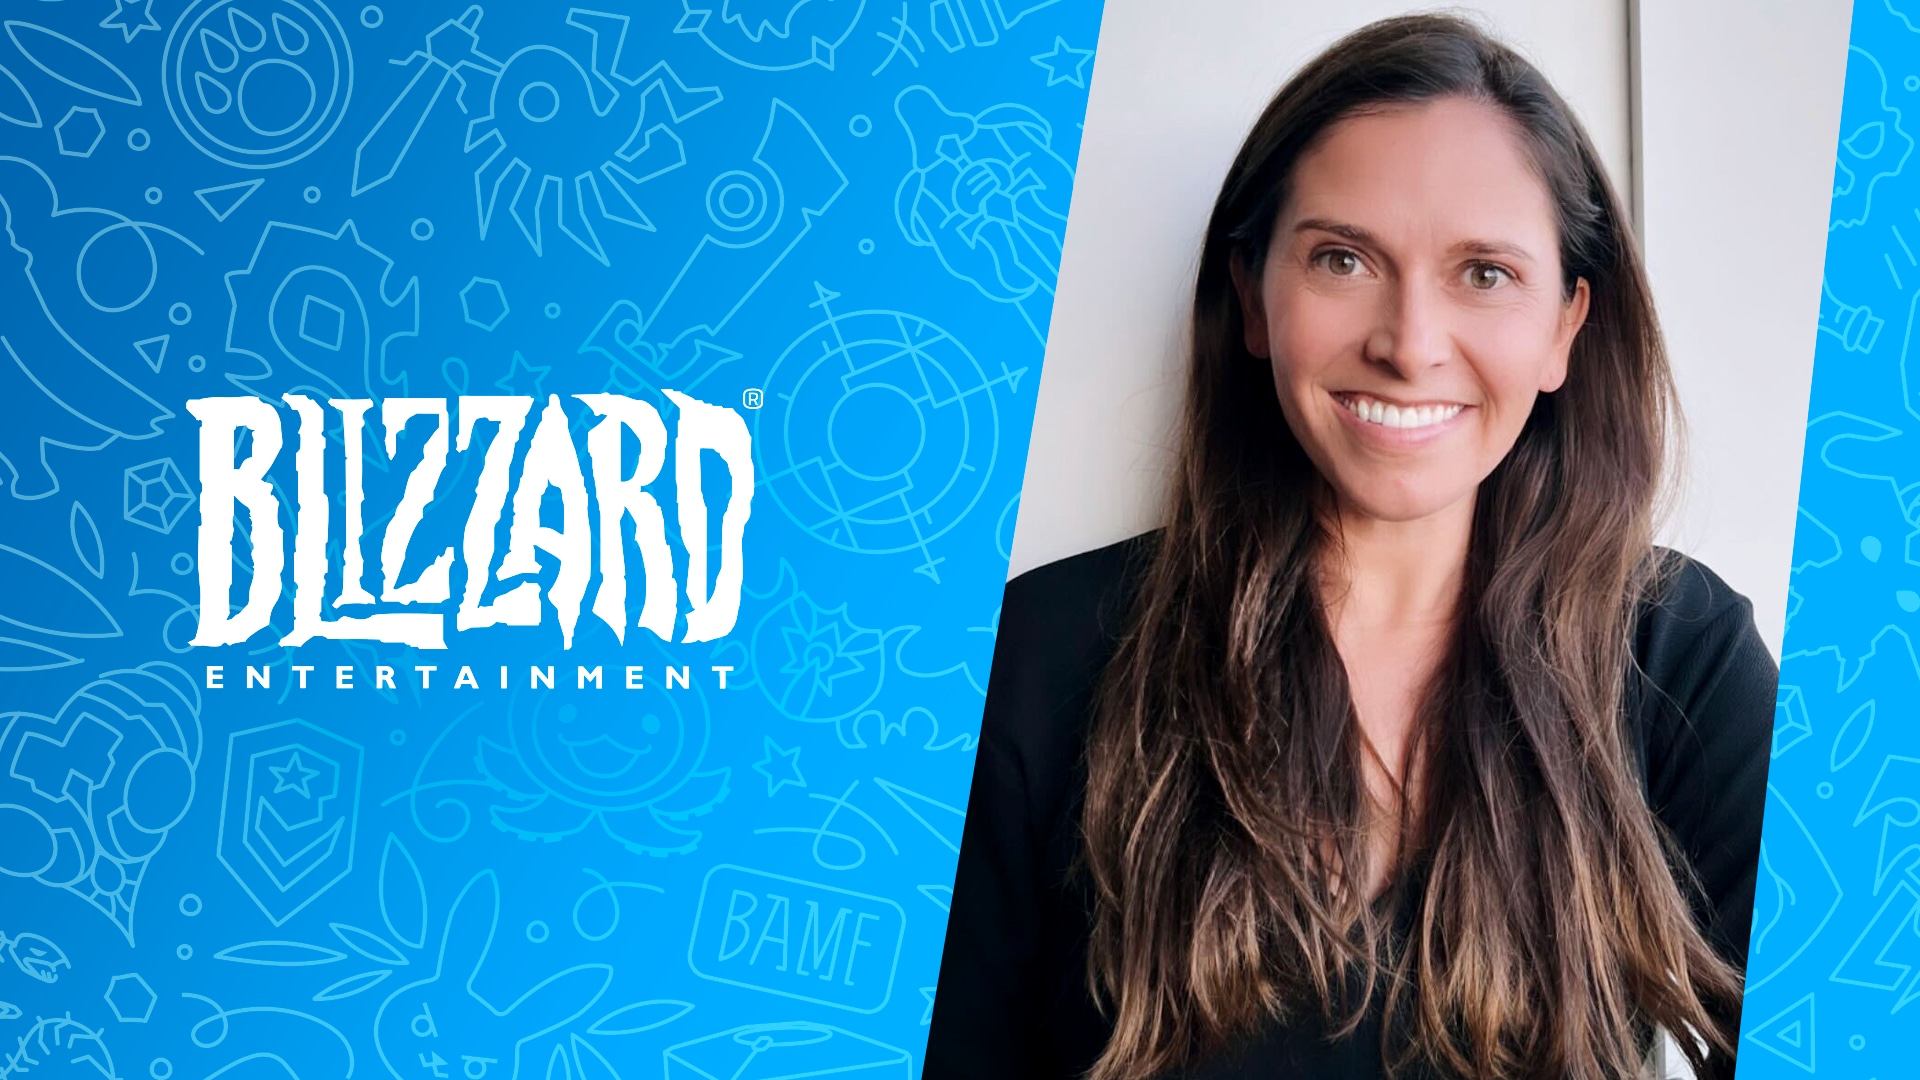 Blizzard Entertainmentのカルチャー部門ヴァイスプレジデントにジェシカ・マルチネスが就任